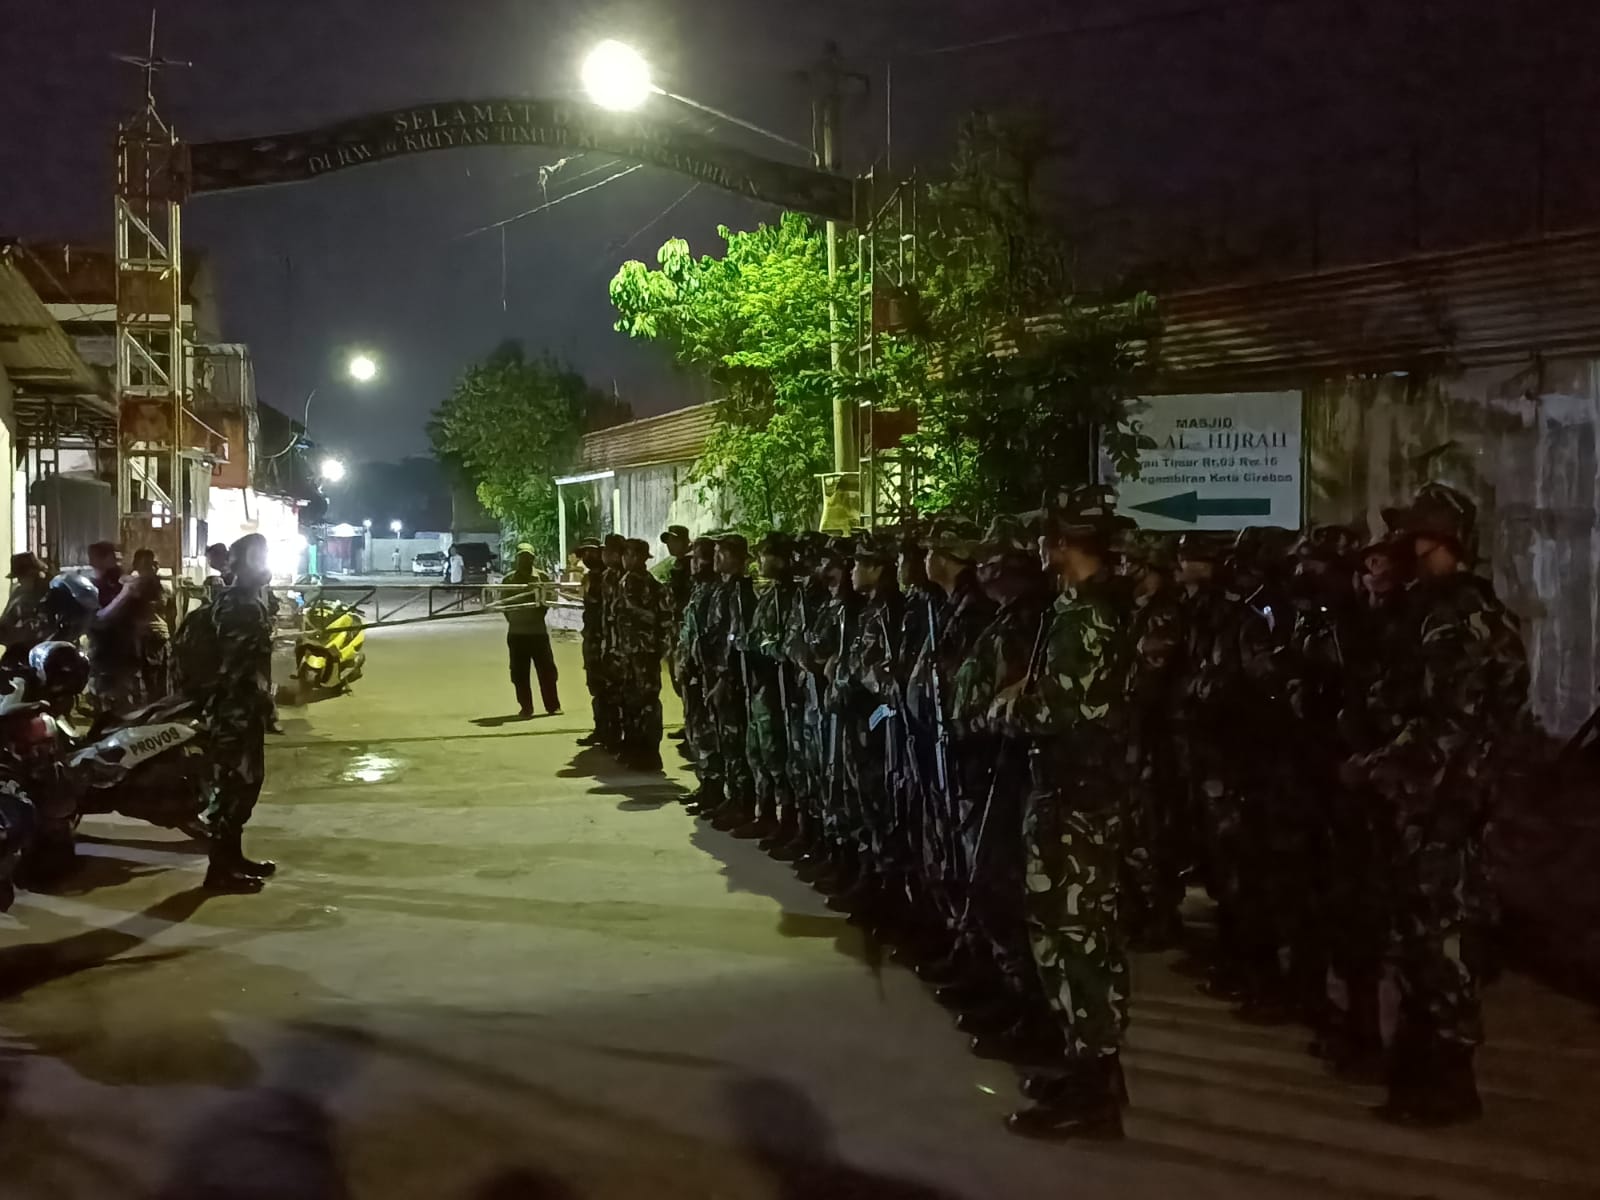 Arhanudse dan Kodim Kota Cirebon Patroli Bawa Senjata Lengkap, Cari Geng Motor